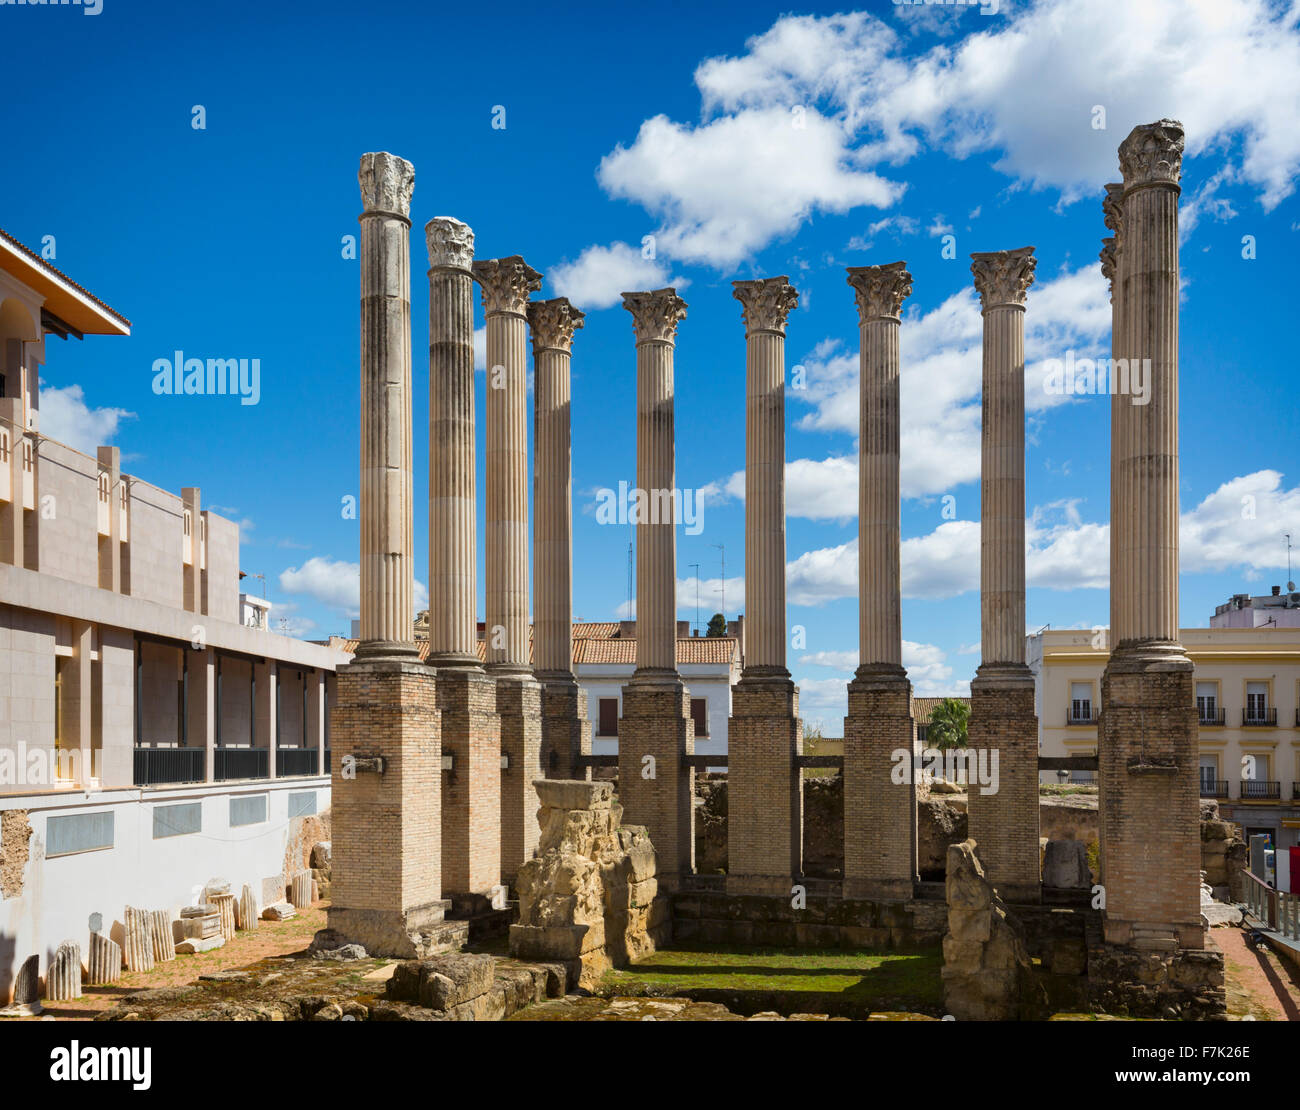 Córdoba, provincia de Córdoba, Andalucía, sur de España. Columnas con capiteles corintios del siglo I A.C. el templo romano. Foto de stock